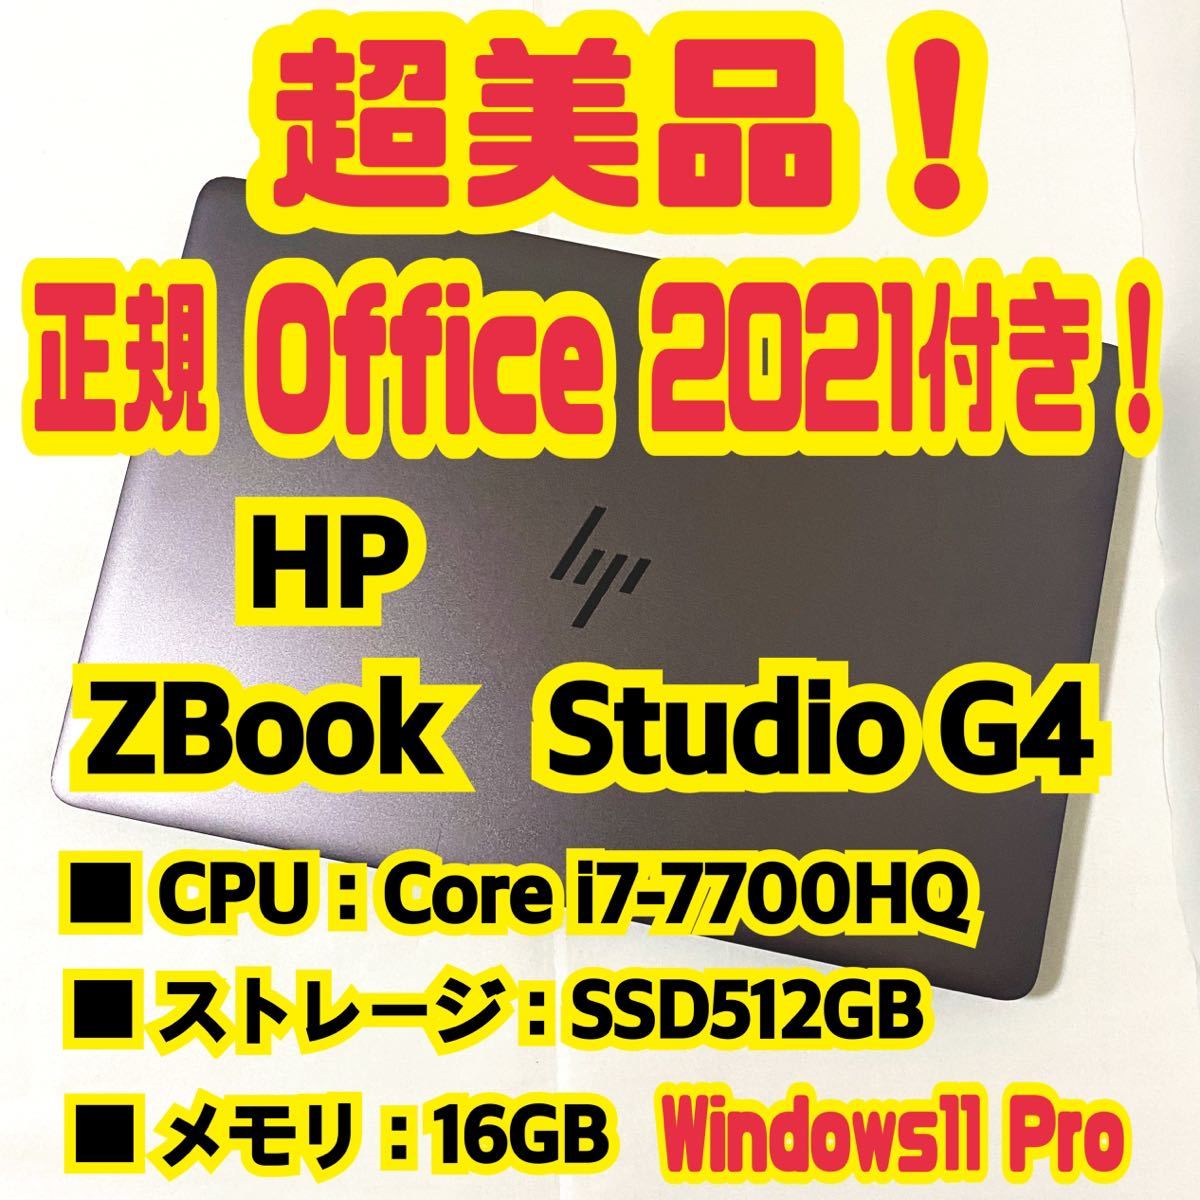 [Office 2021 Pro имеется!]HP ZBook Studio G4 ноутбук Windows11 Pro Core i7 7700HQ 16GB SSD512GB